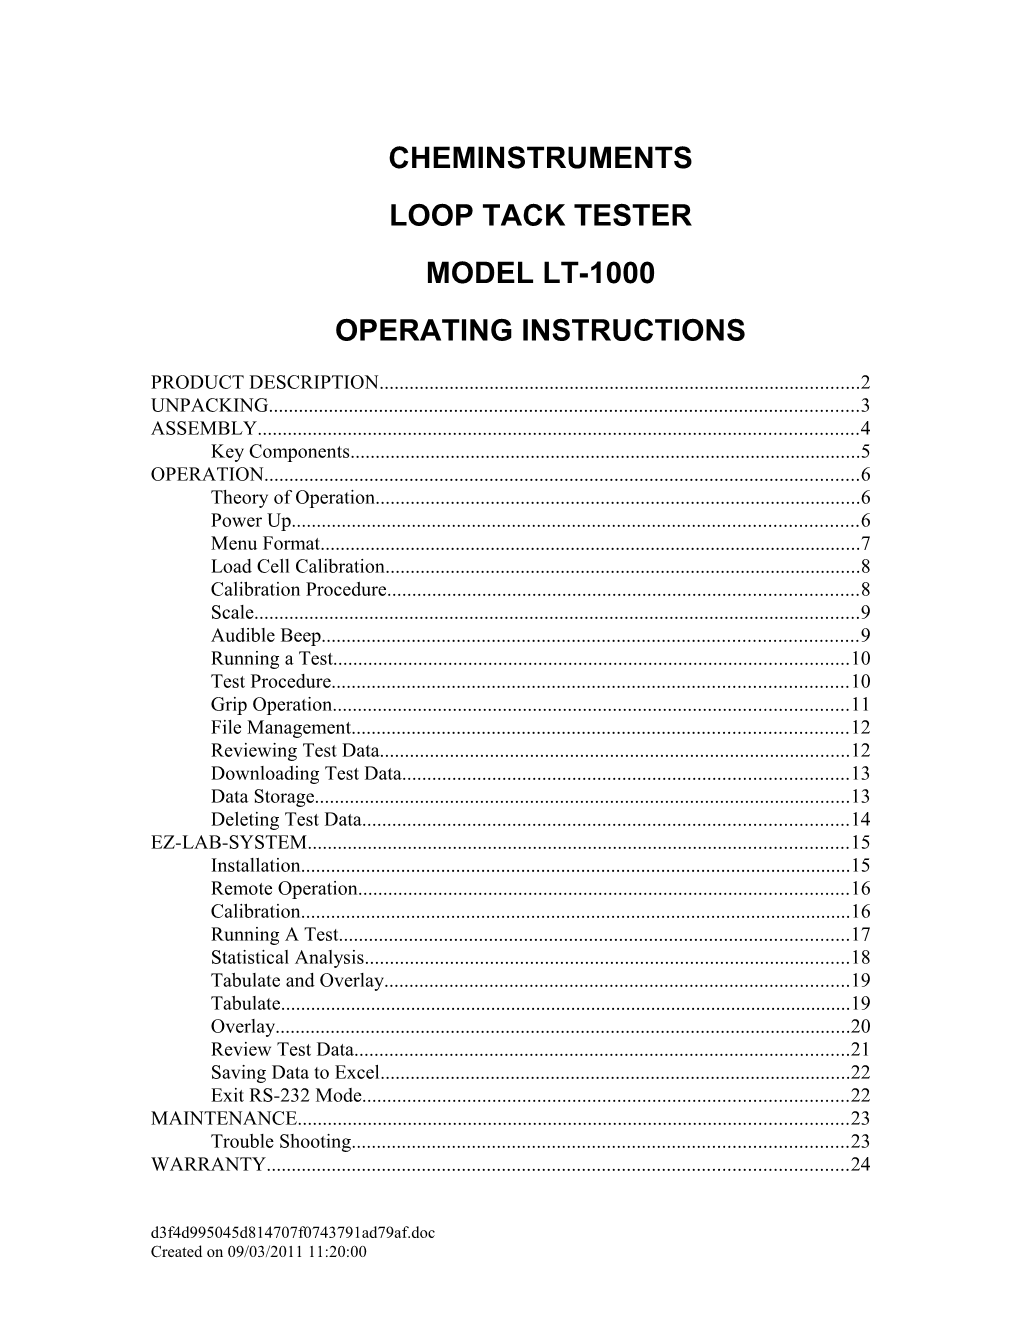 Loop Tack Tester